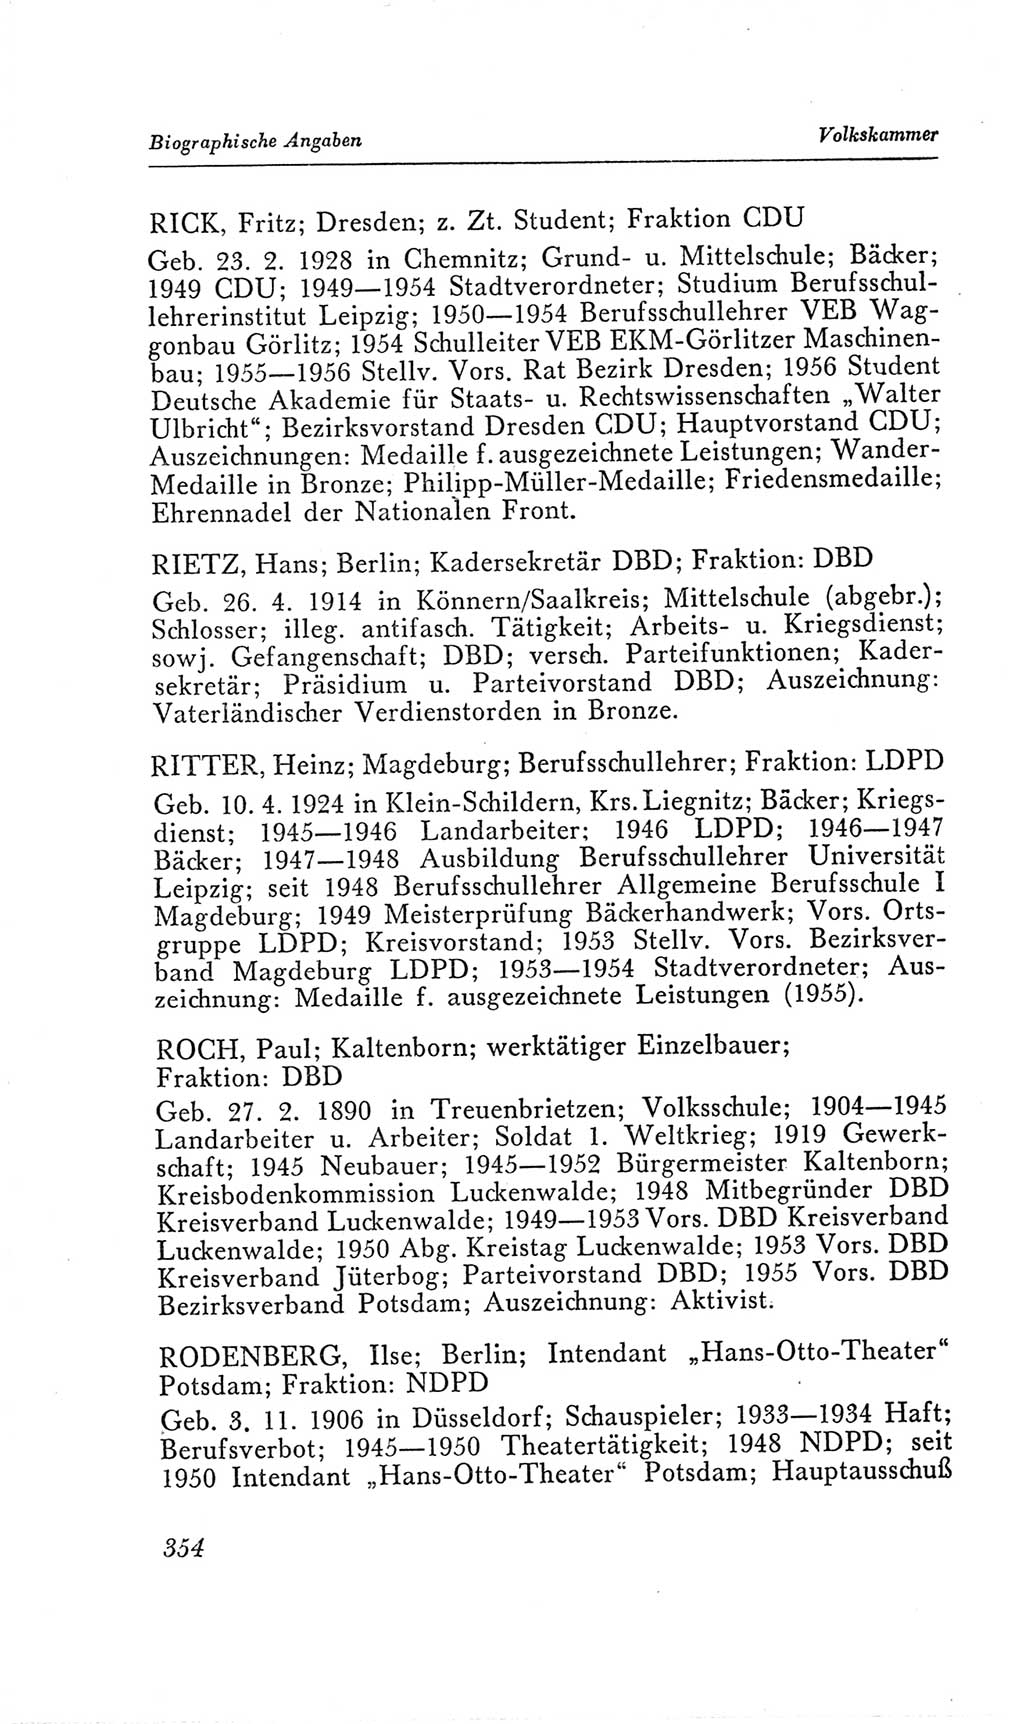 Handbuch der Volkskammer (VK) der Deutschen Demokratischen Republik (DDR), 2. Wahlperiode 1954-1958, Seite 354 (Hdb. VK. DDR, 2. WP. 1954-1958, S. 354)